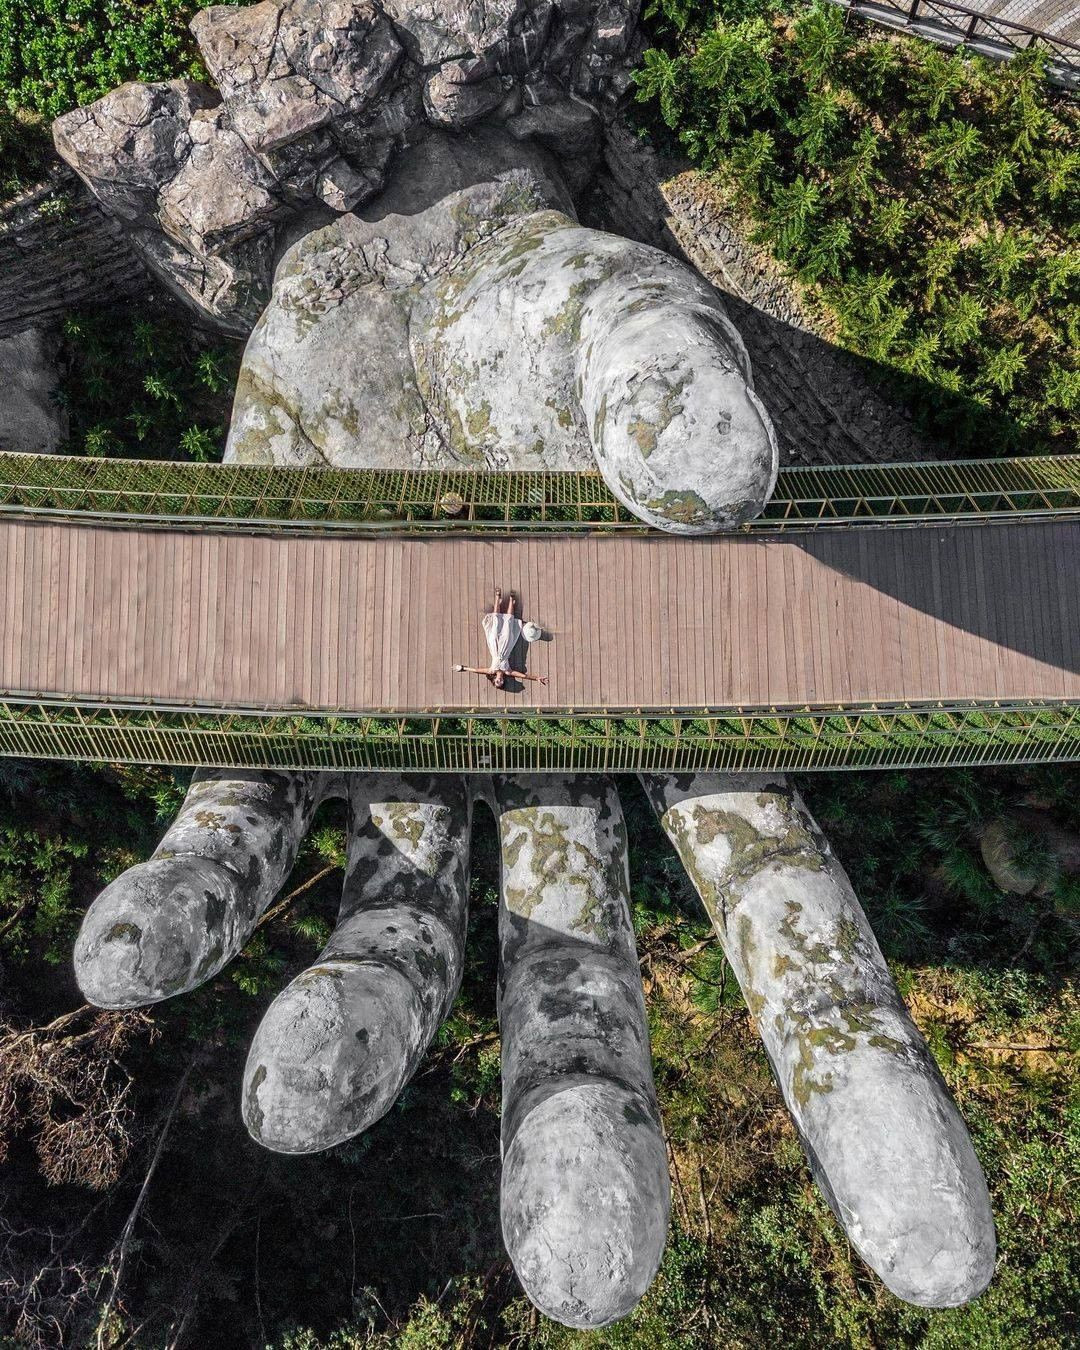 Ái Thủy - nữ kiến trúc sư tạo nên cây Cầu Vàng “made in Vietnam” làm kinh ngạc khắp thế giới và lần đầu nghe kể về ý nghĩa thật sự của đôi bàn tay khổng lồ - Ảnh 4.